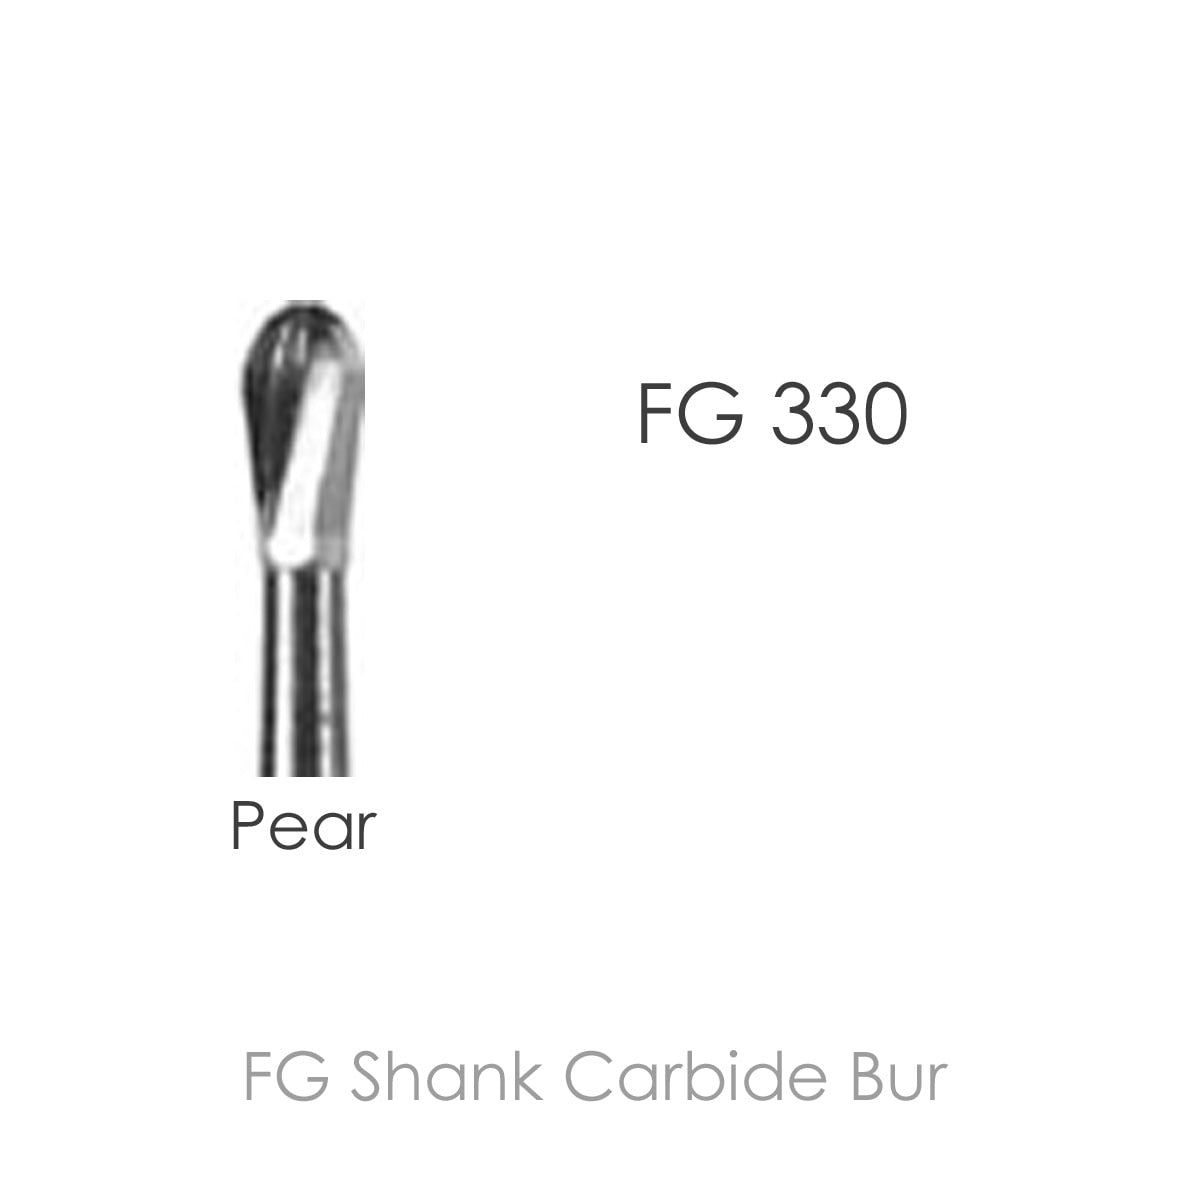 FG Shank Carbide Bur FG330, Plain Flat Fissure, Pear Shap, 10pcs/Pack.